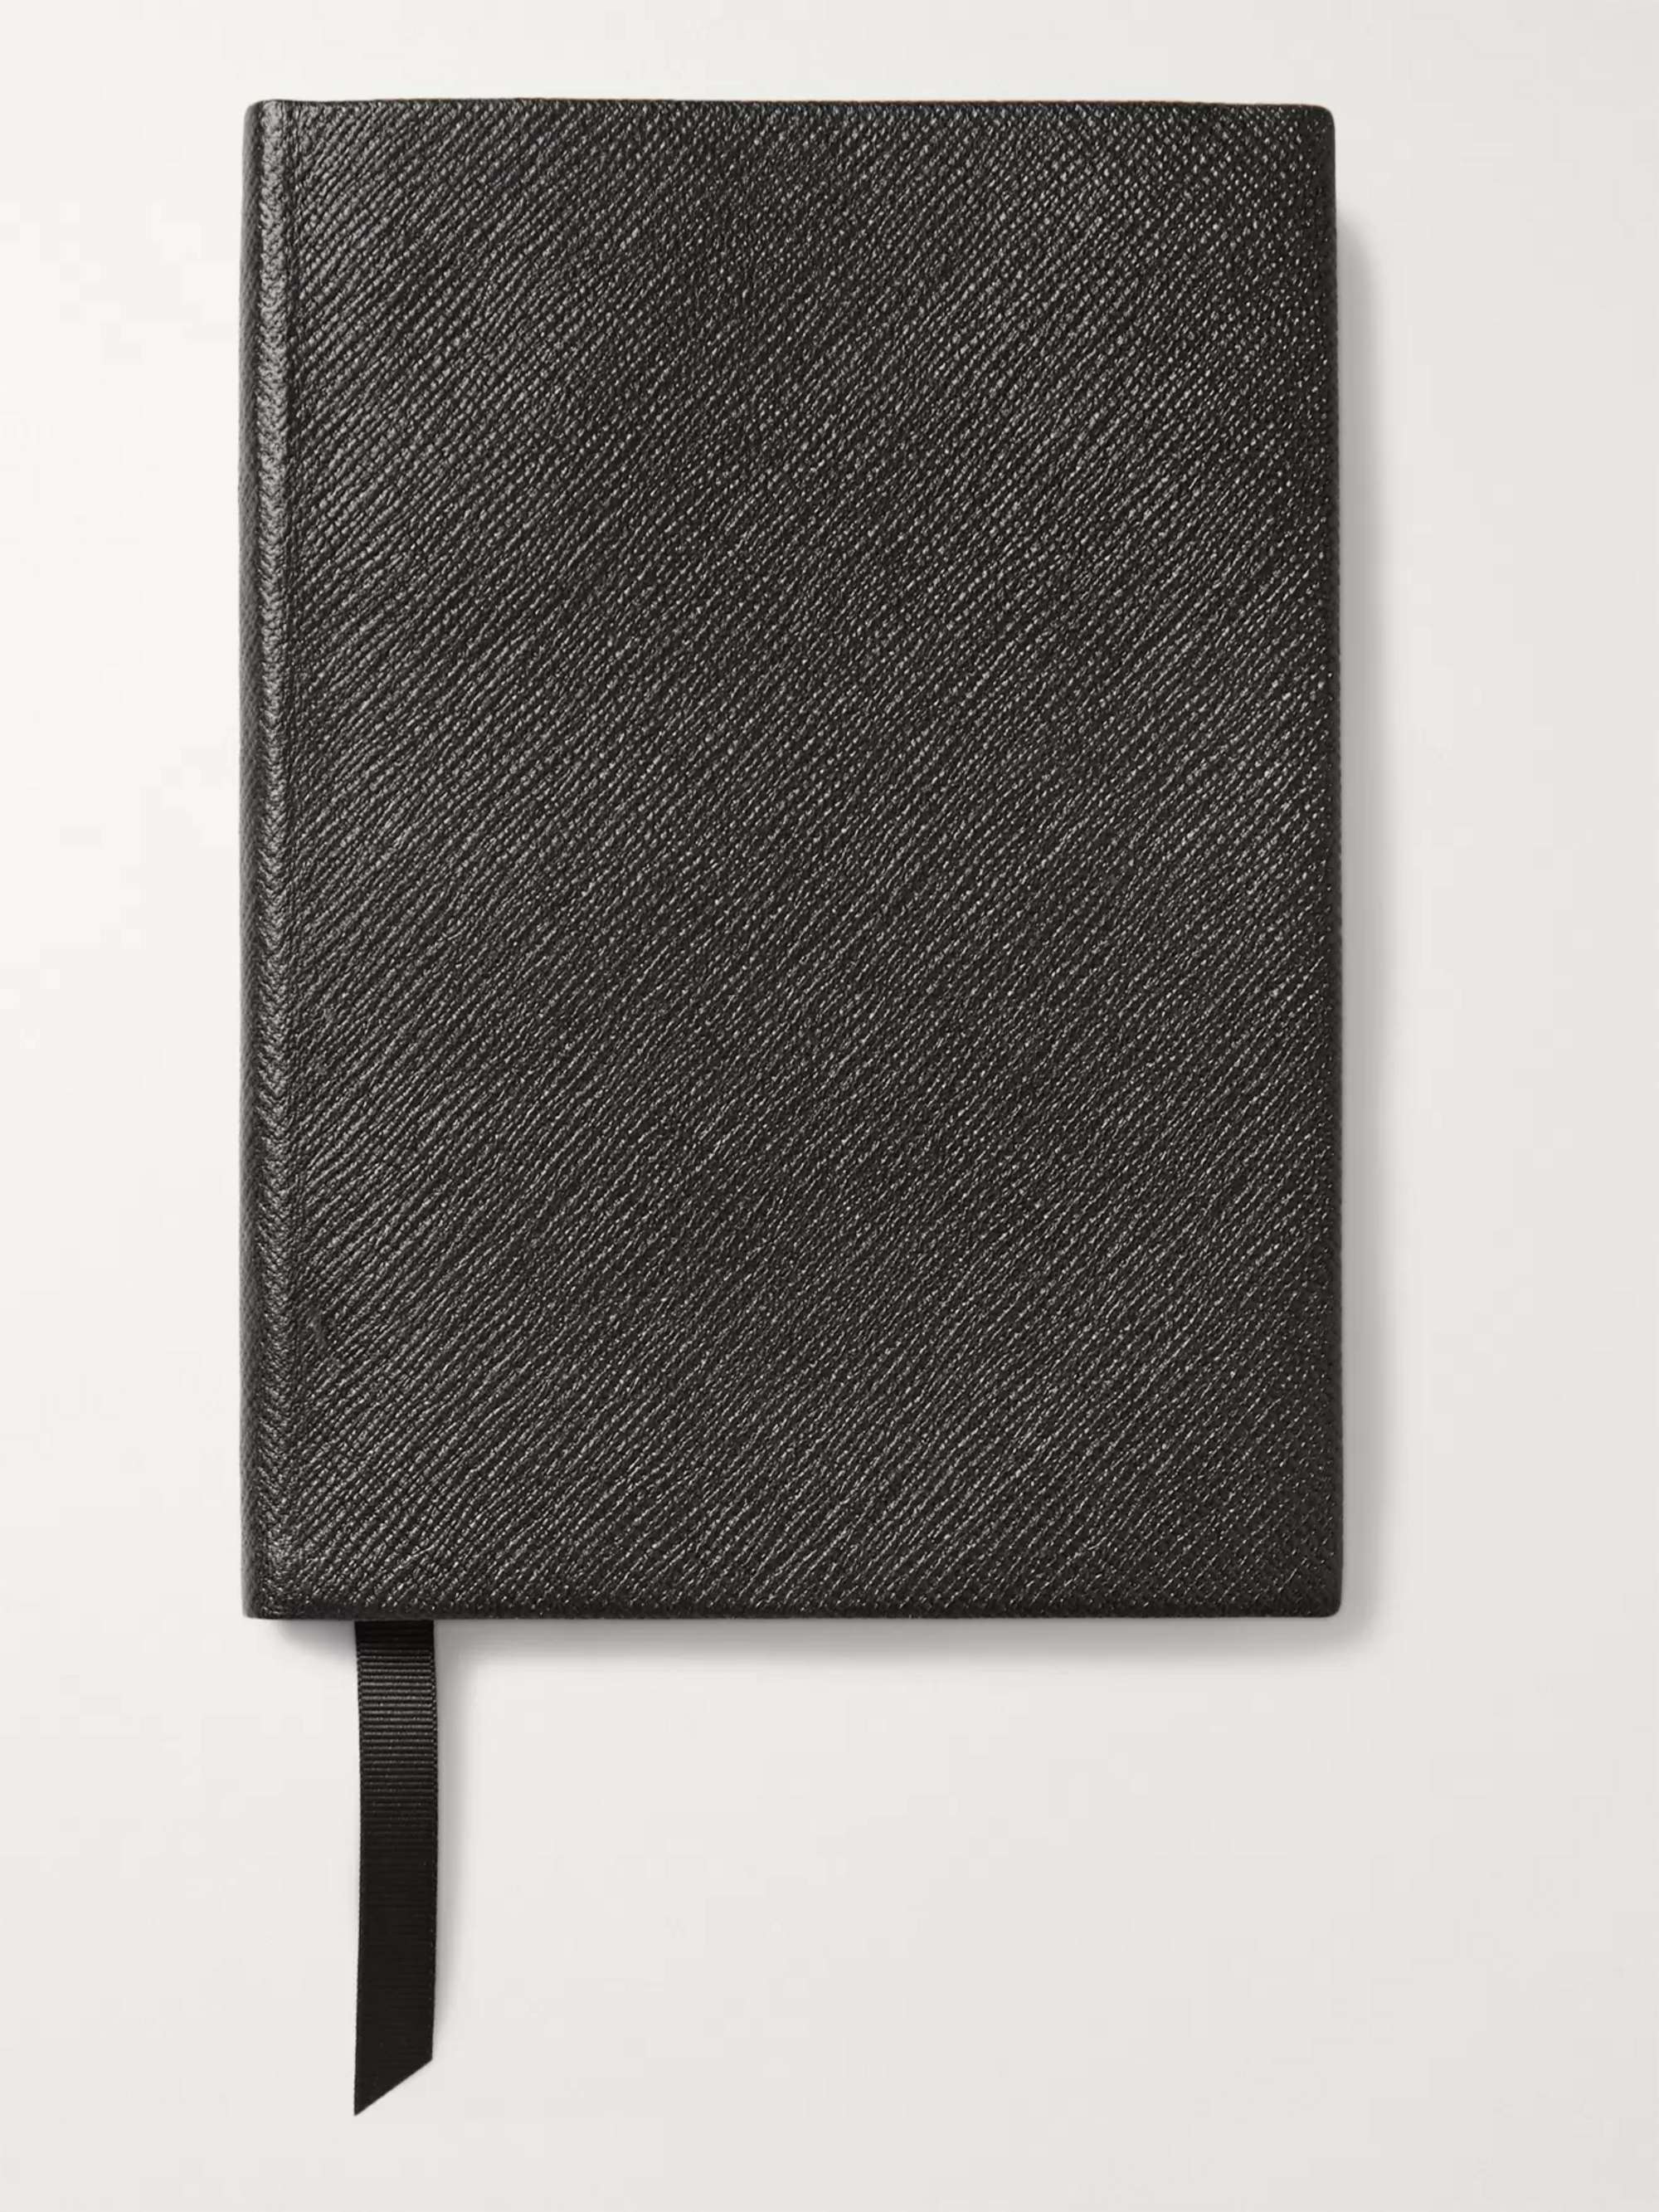 Blue Panama Leather Notebook by Smythson